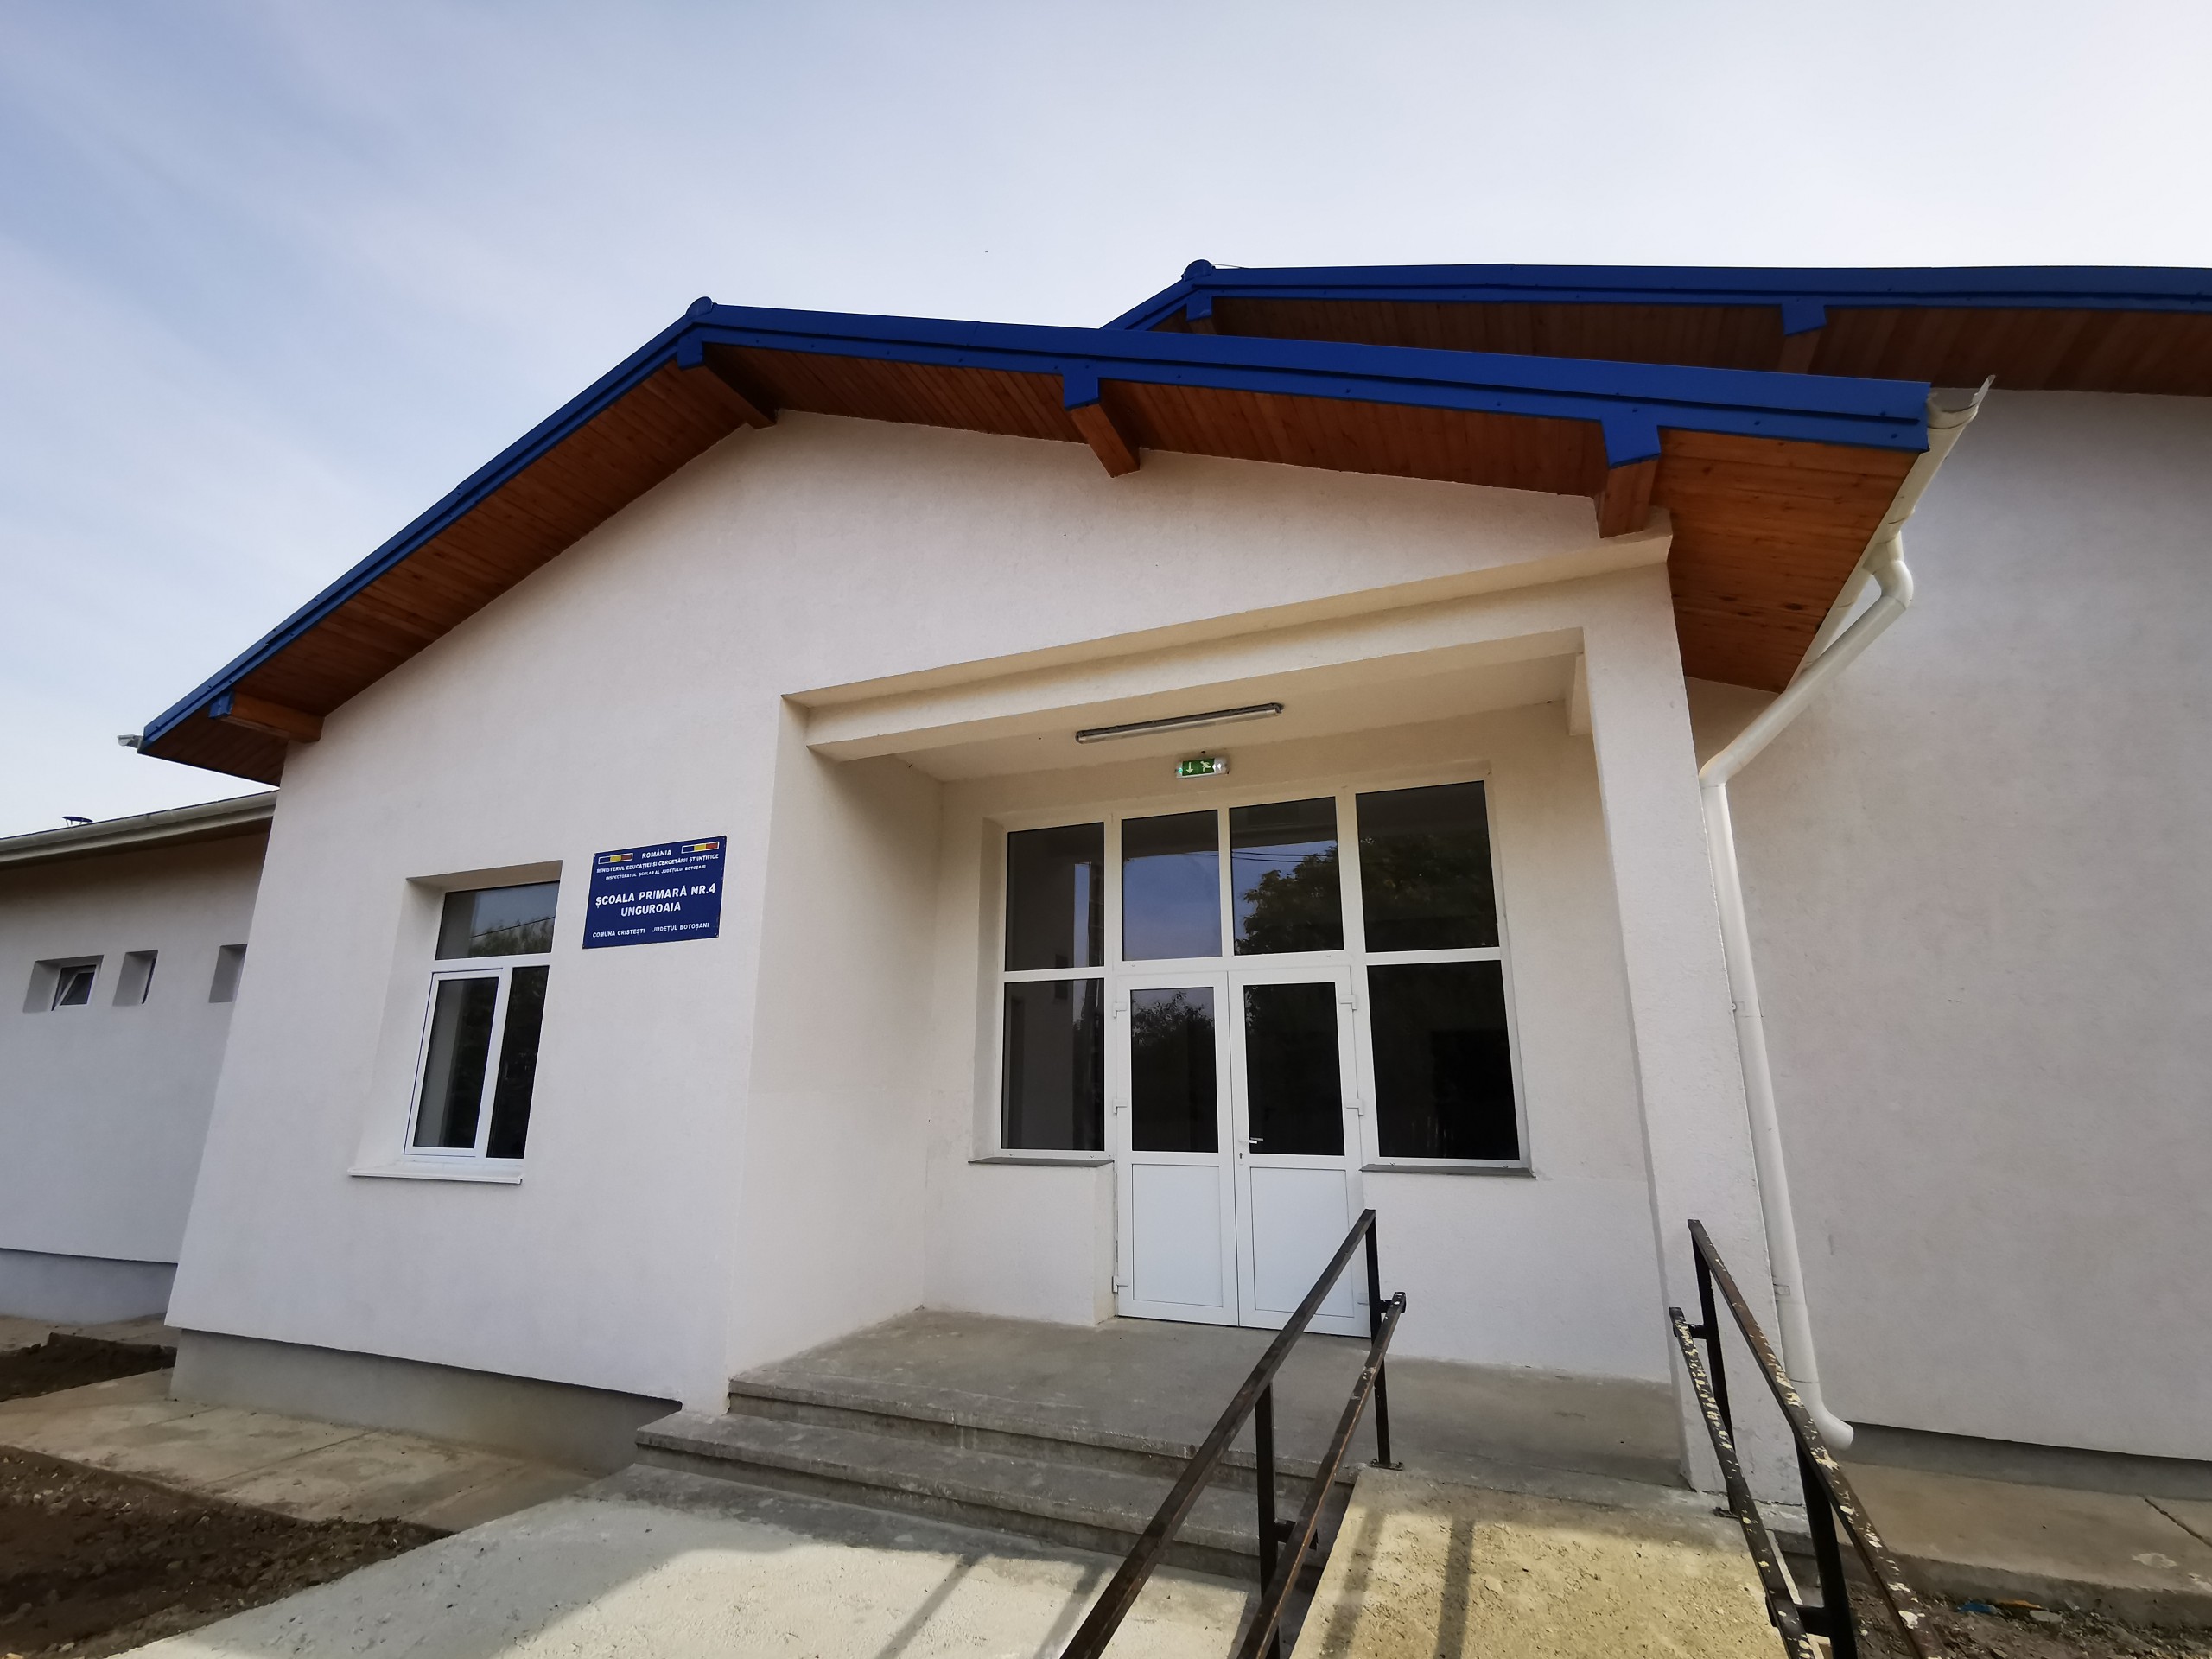 FINALIZAT – Reabilitare, modernizare si dotare Școala Primară Nr. 4 Unguroaia – FOTO